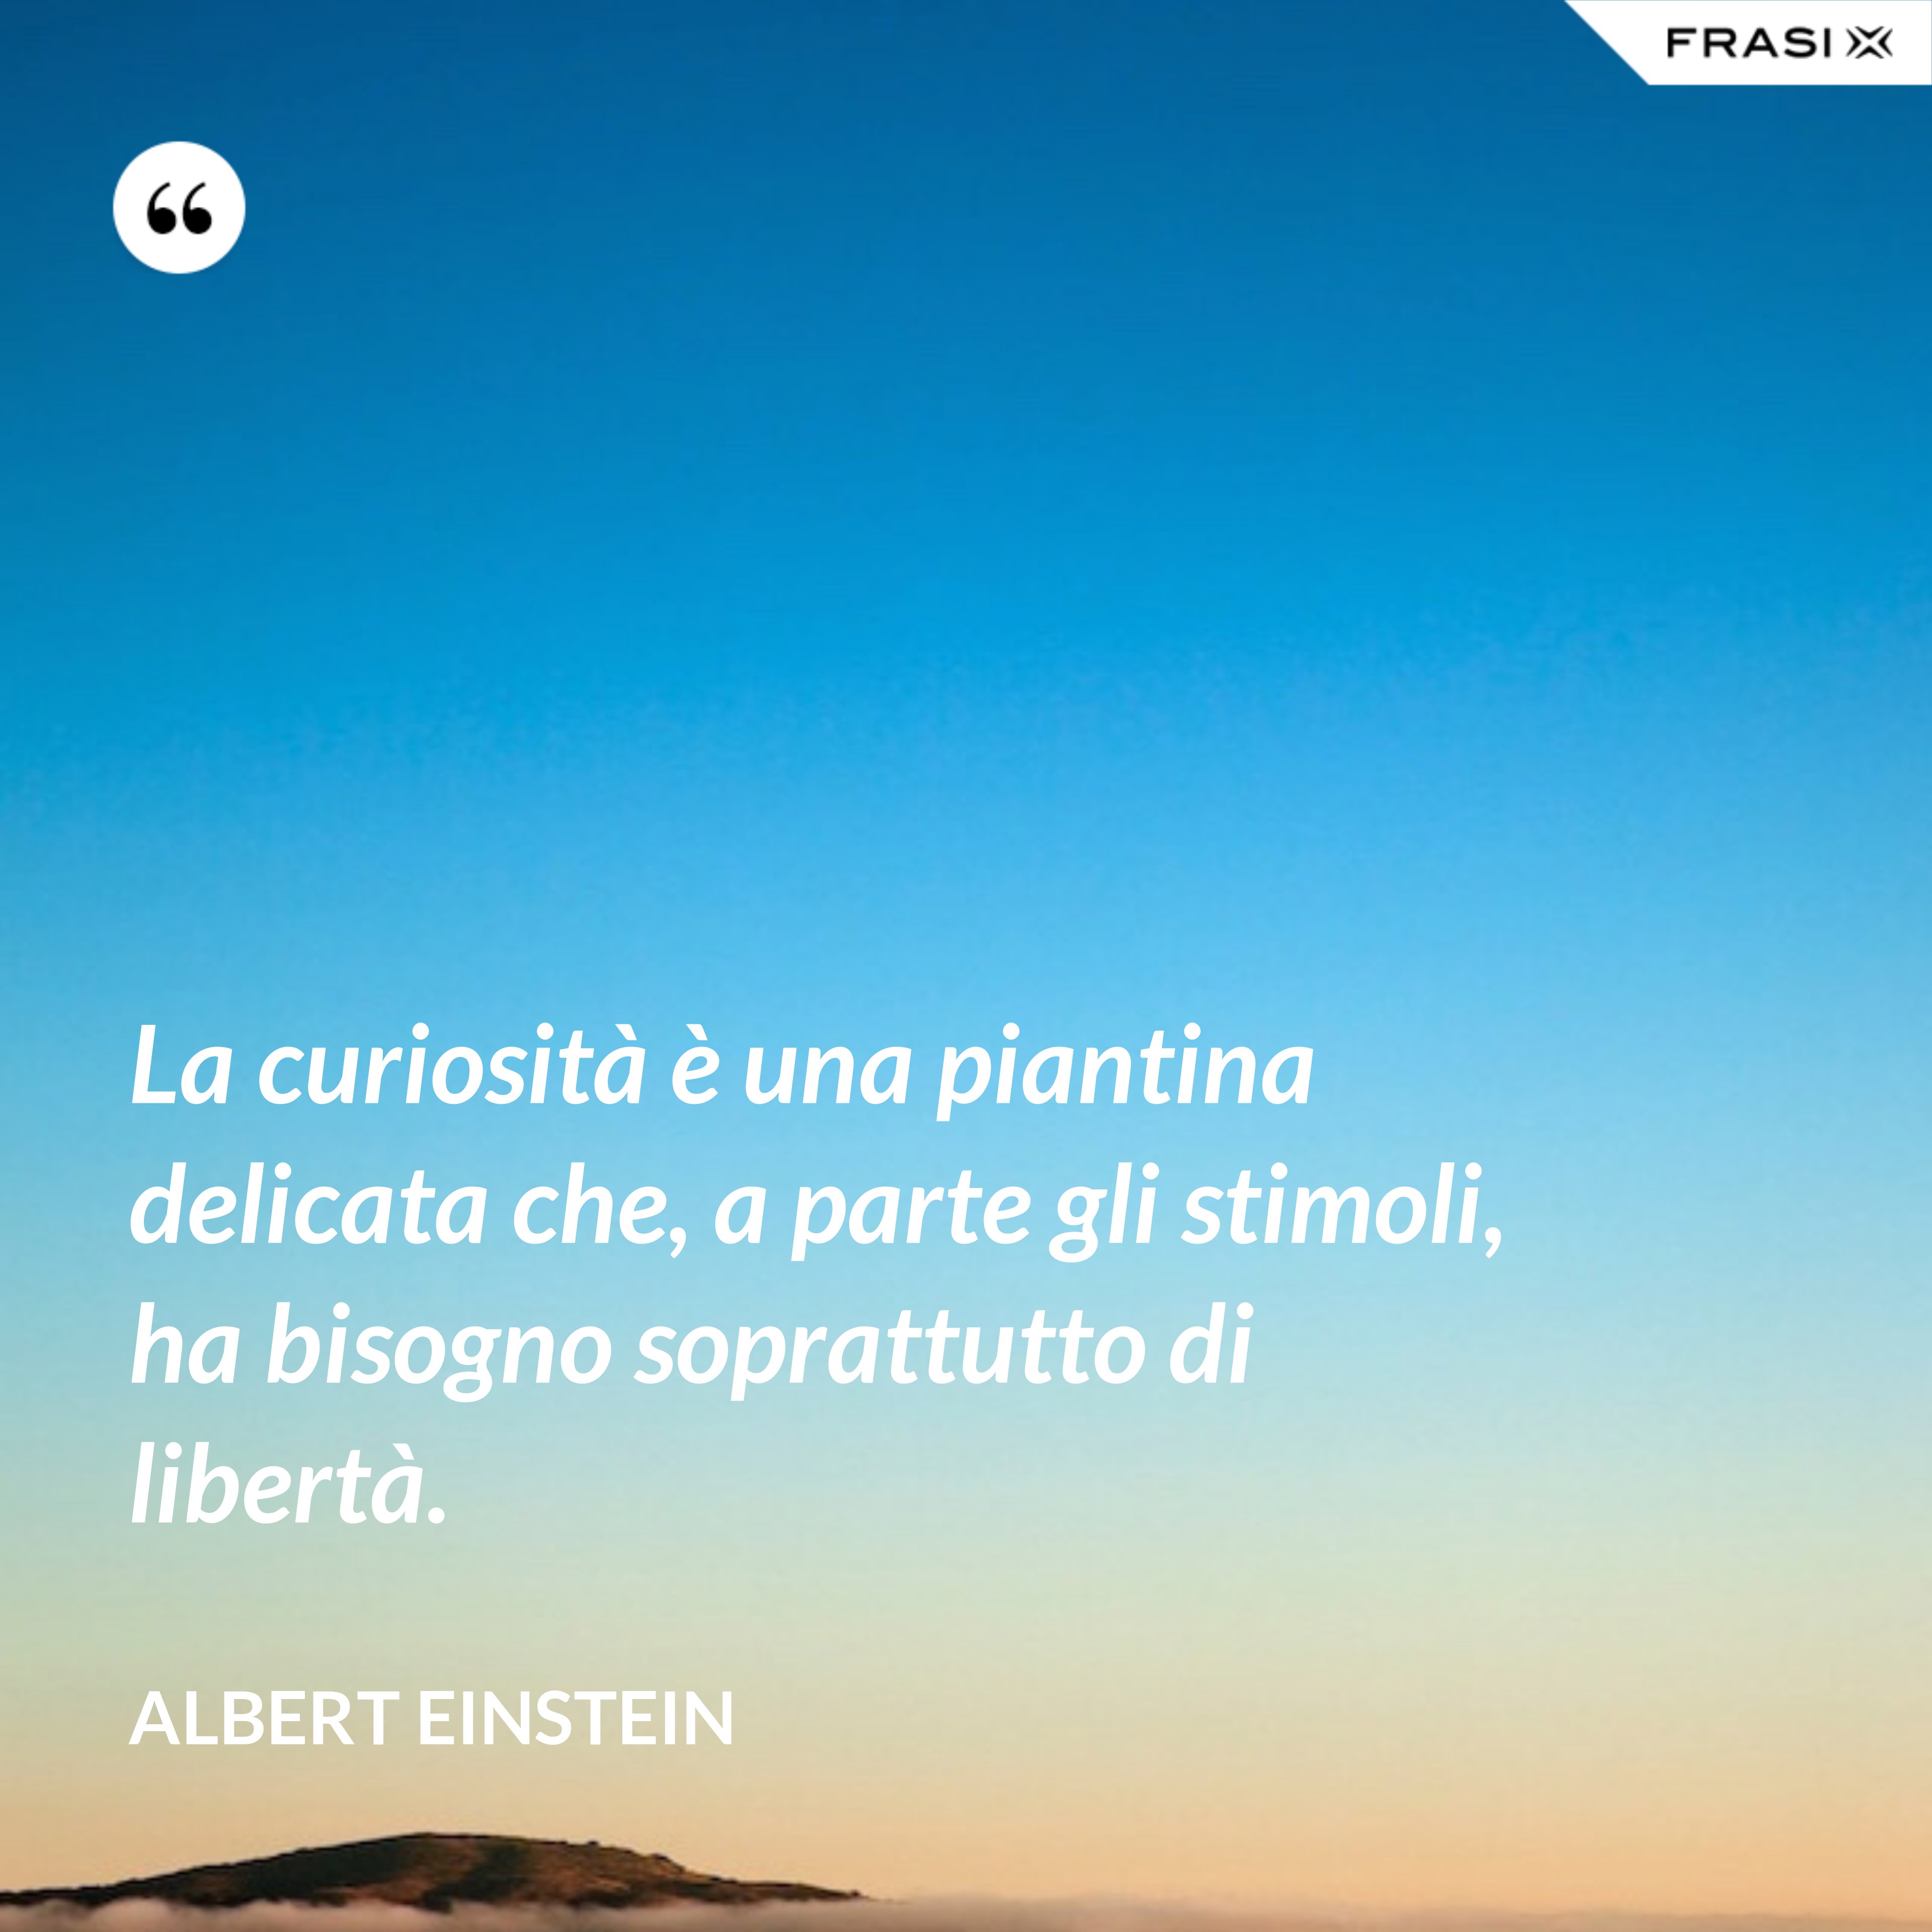 La curiosità è una piantina delicata che, a parte gli stimoli, ha bisogno soprattutto di libertà. - Albert Einstein